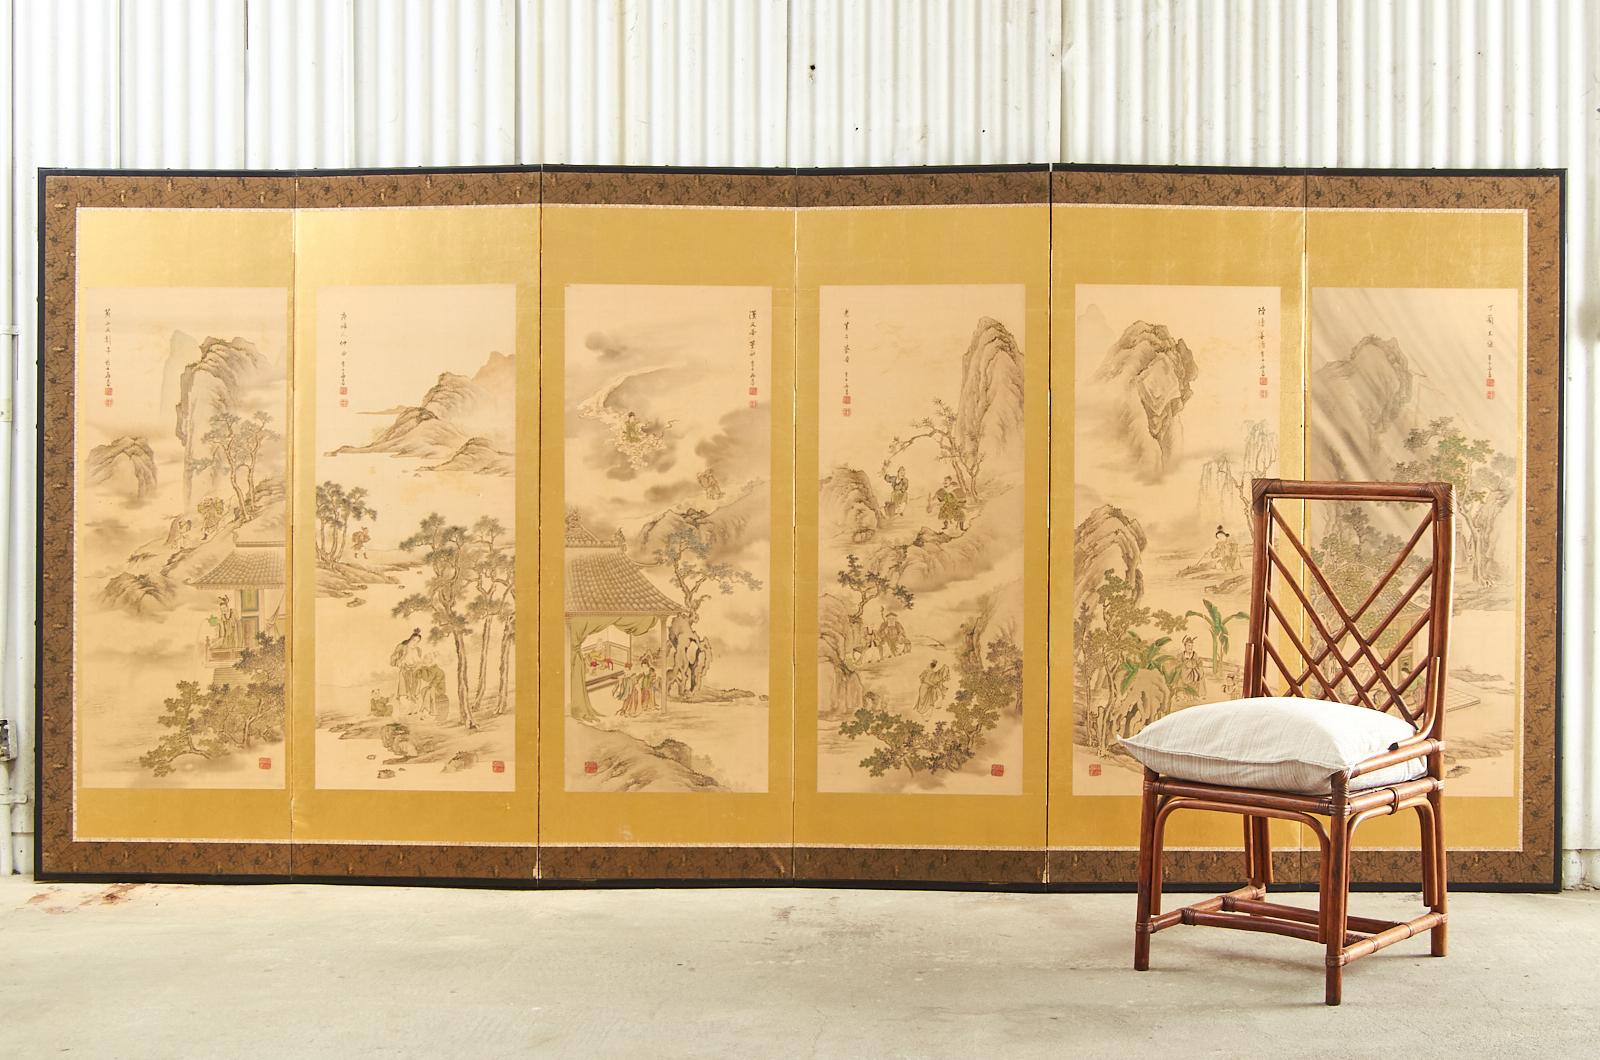 Impressionnante paire de paravents japonais de la période Taisho meiji. Chaque écran à six panneaux représente une image tirée des 24 parangons de piété filiale, histoires confucéennes écrites par Guo Jujing sous la dynastie Yuan. Encre et pigments